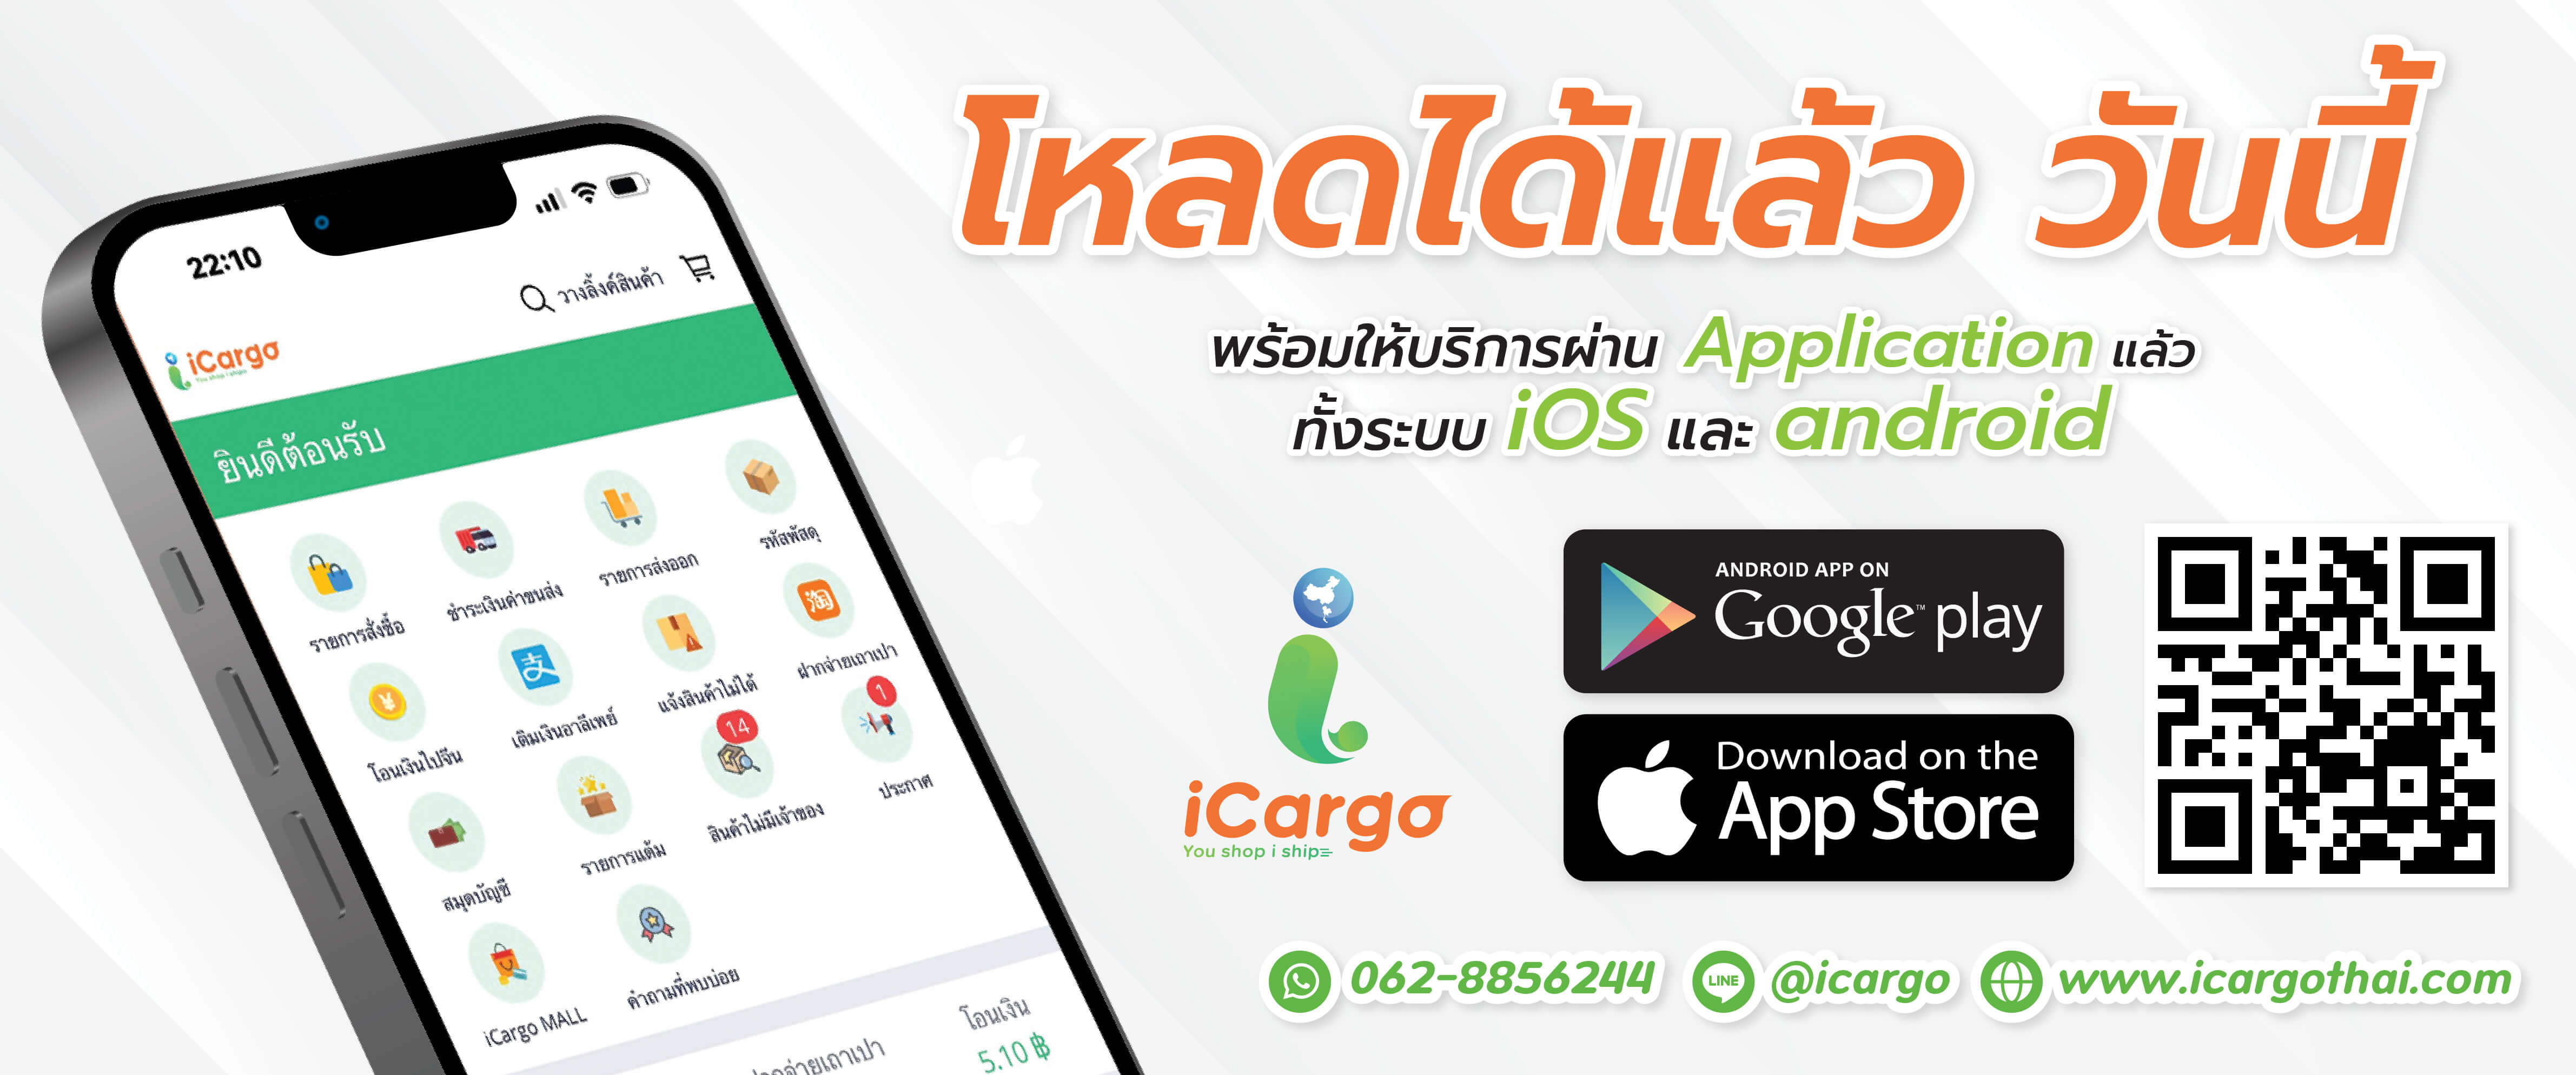 แอพพลิเคชั่น iOS และ Android iCargo Thai สั่งซื้อและนำเข้าสินค้าจากจีน